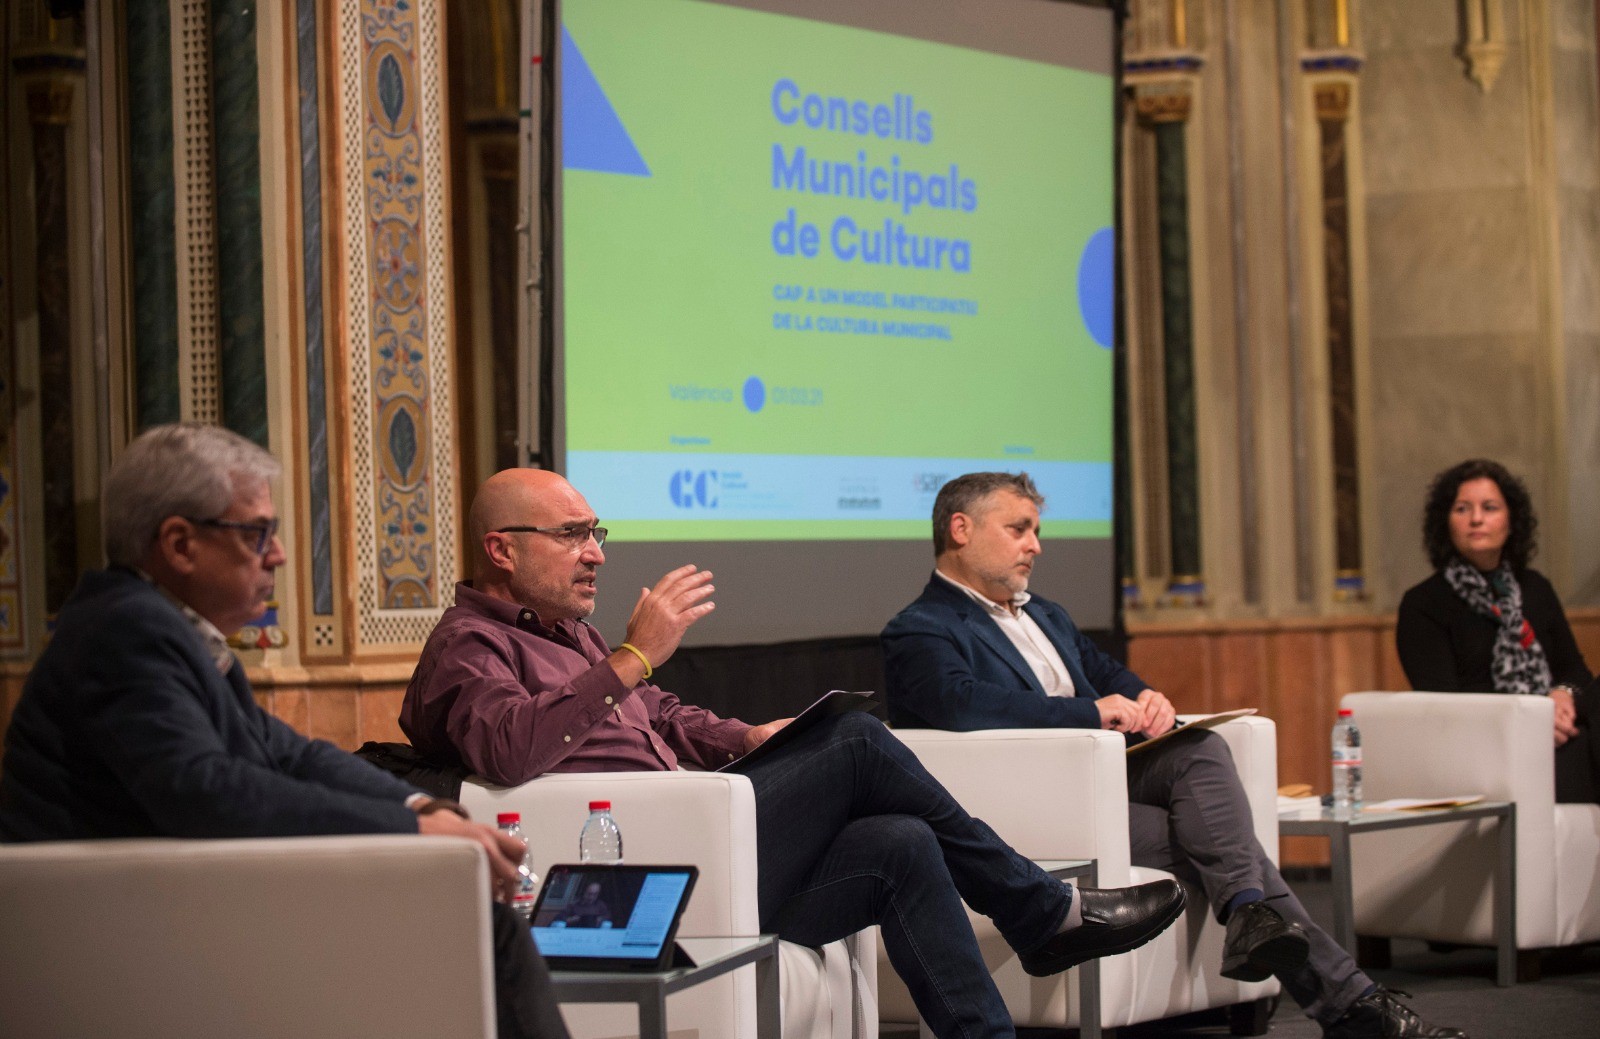 Los Consejos Municipales de Cultura se consolidan en 18 ayuntamientos valencianos